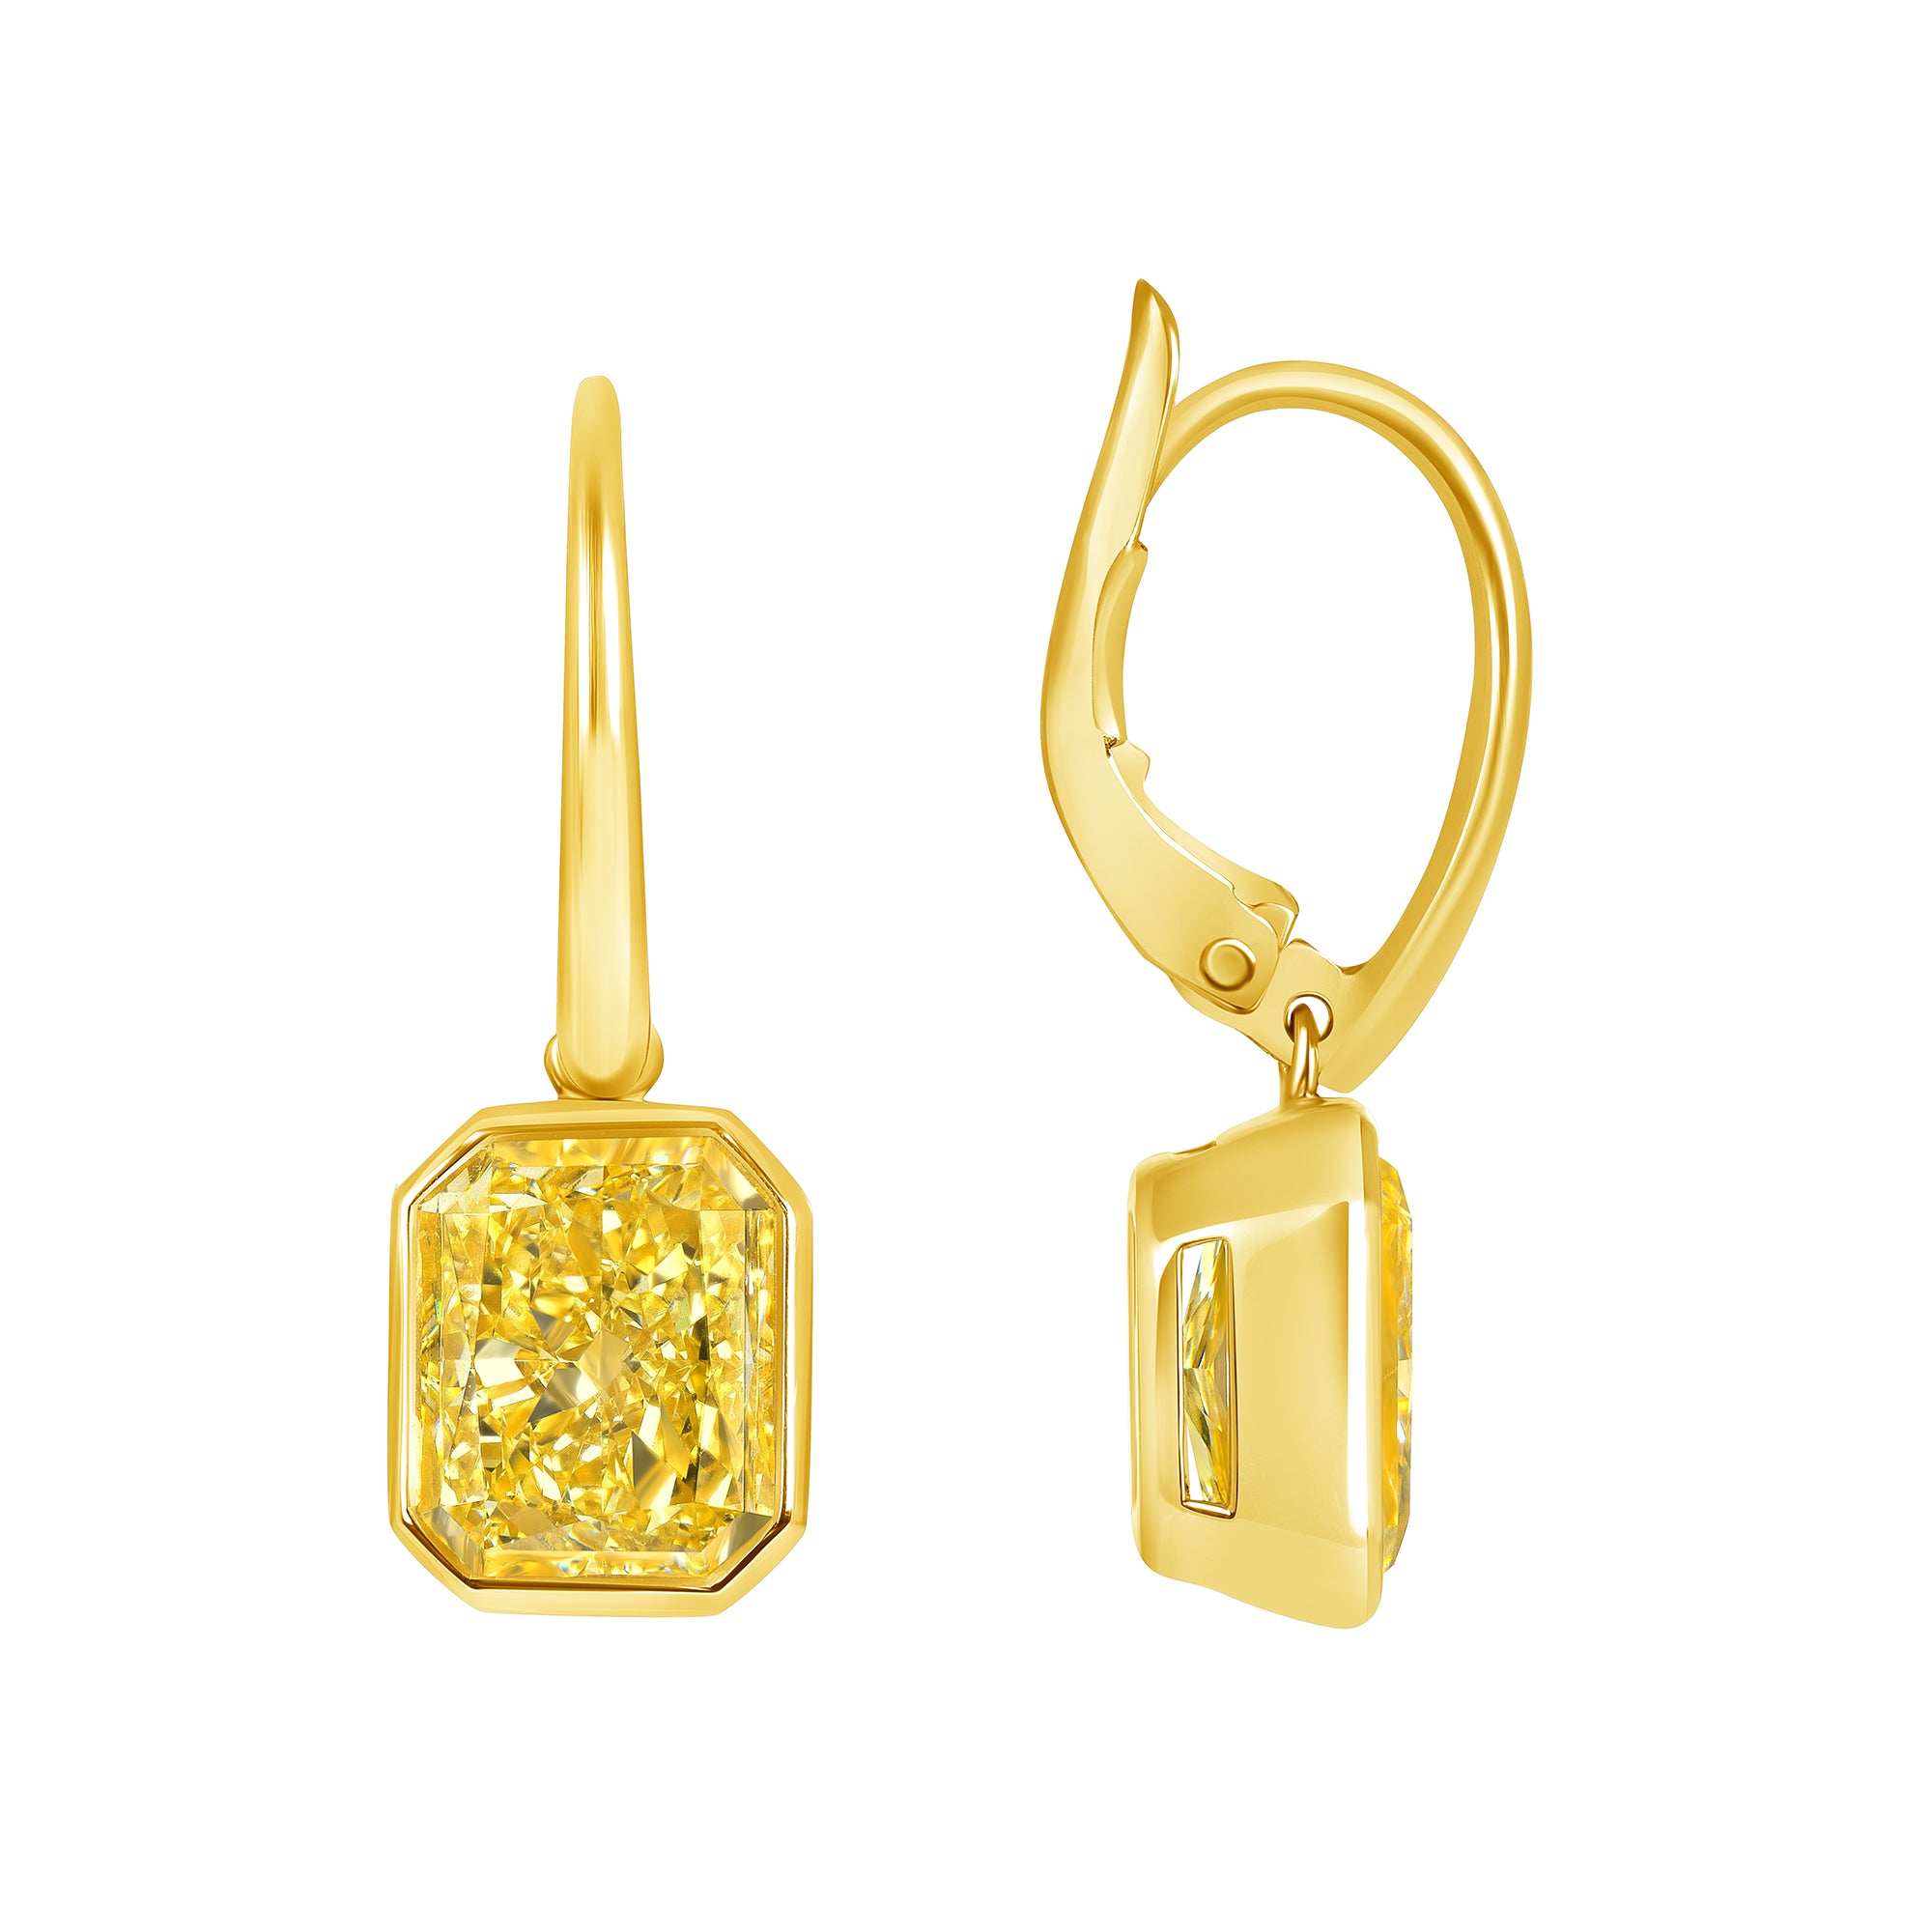 Radiant Cut Bezel Set Fancy Yellow Diamond Dangle Earring in 18 Karat Yellow Gold